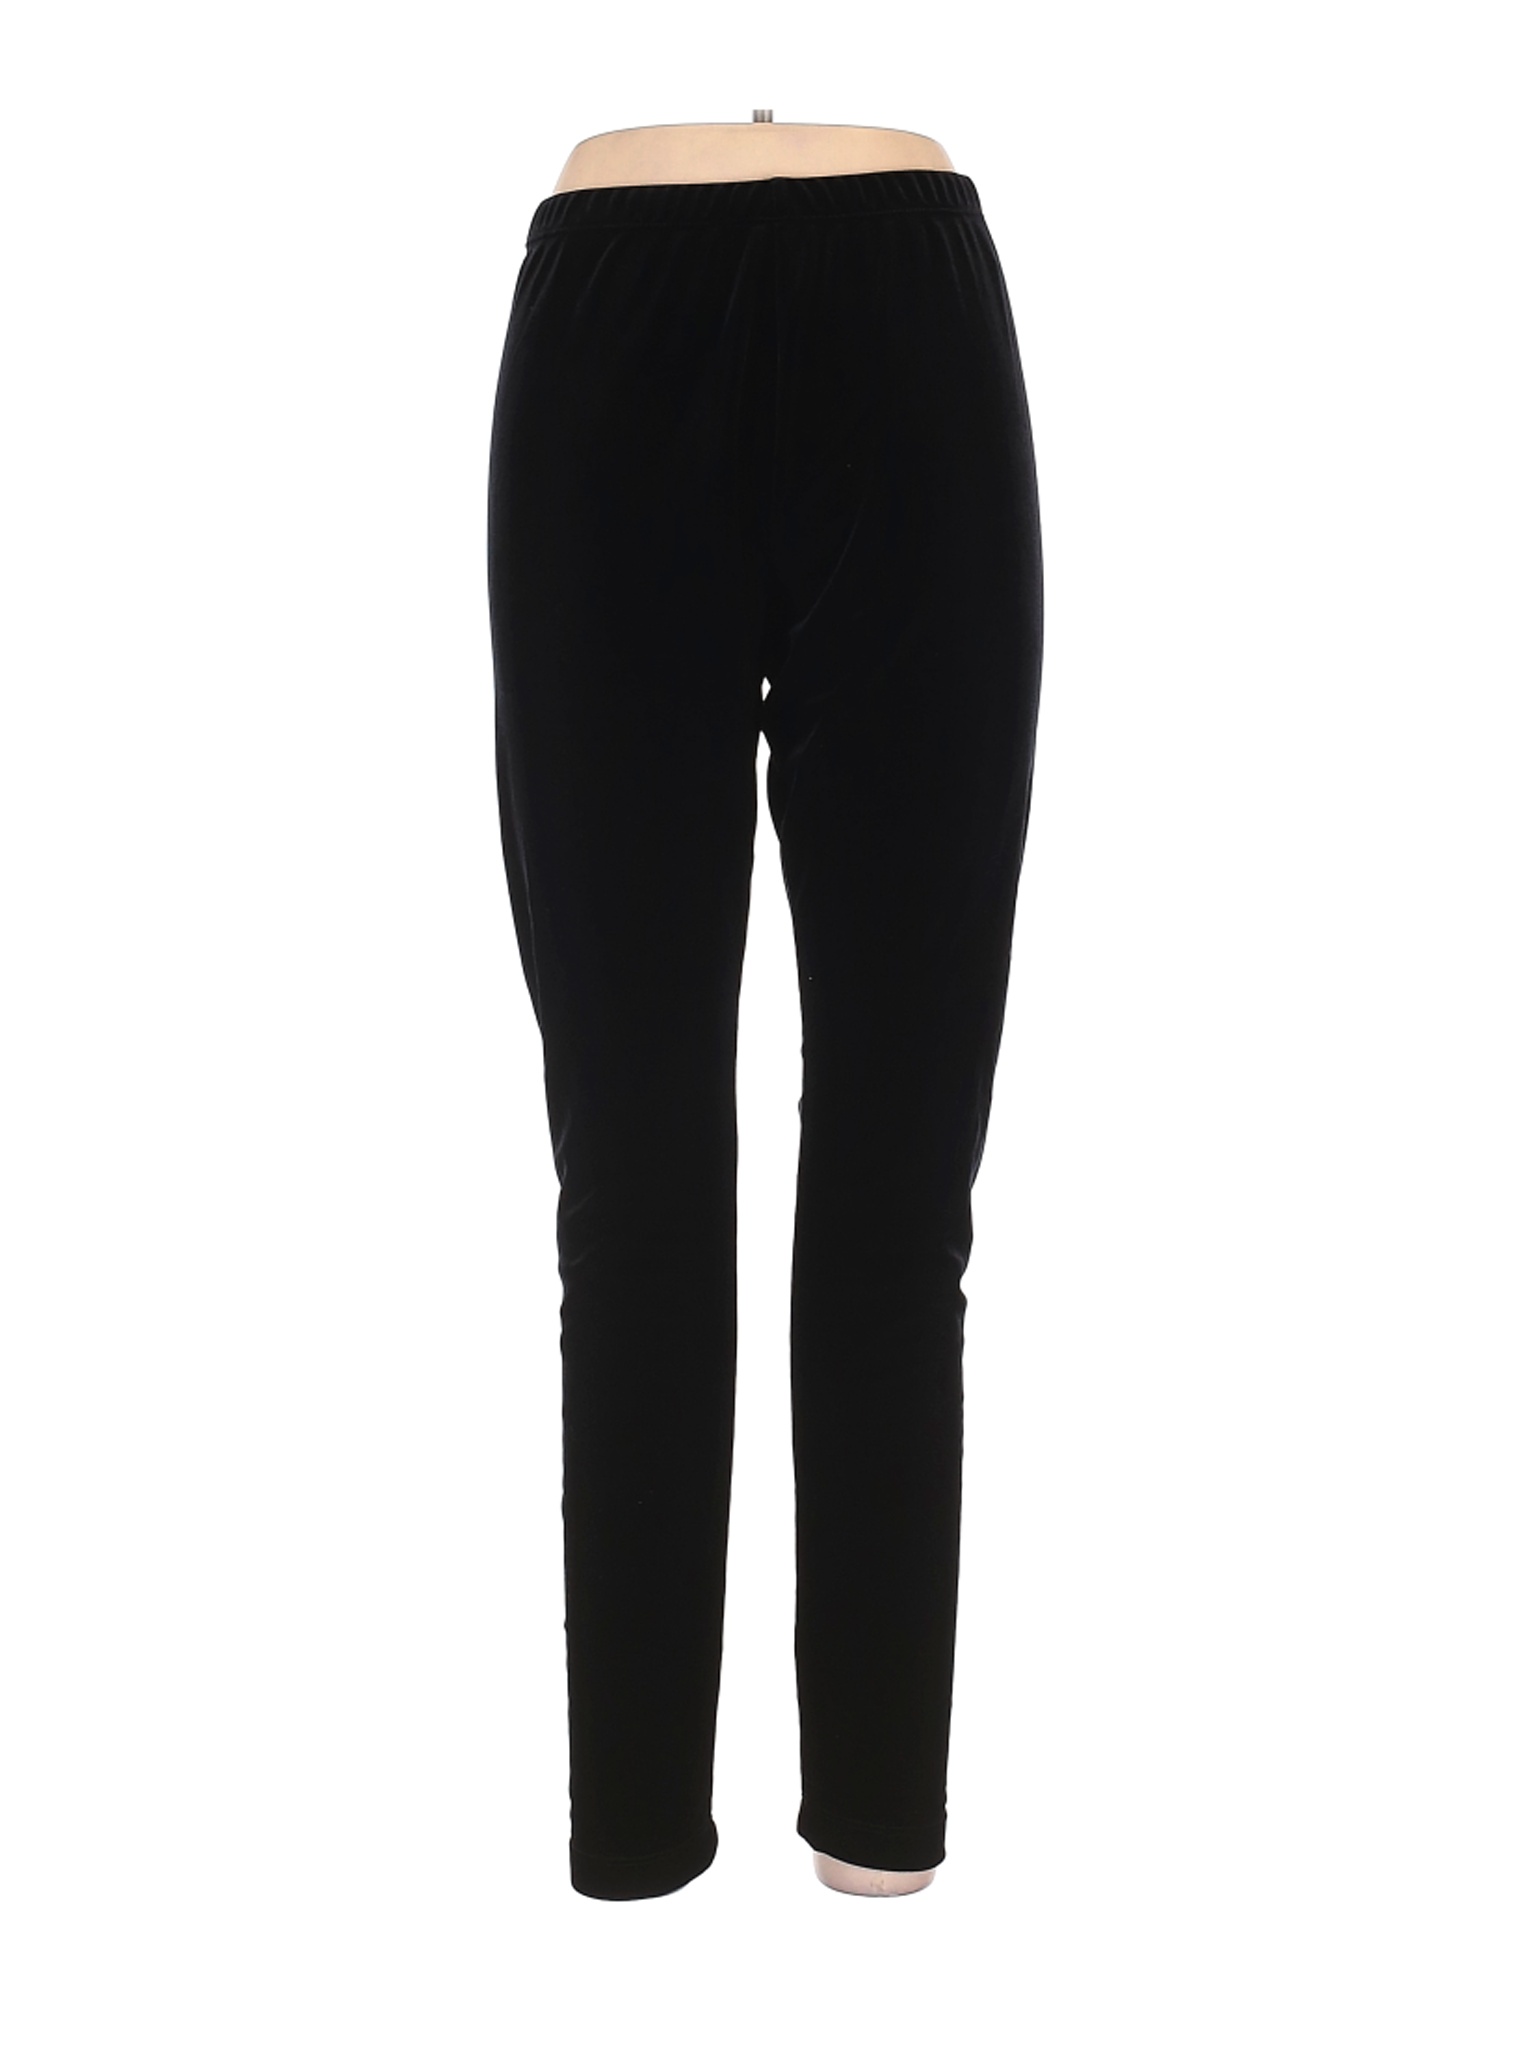 Style&Co Women Black Velour Pants L | eBay